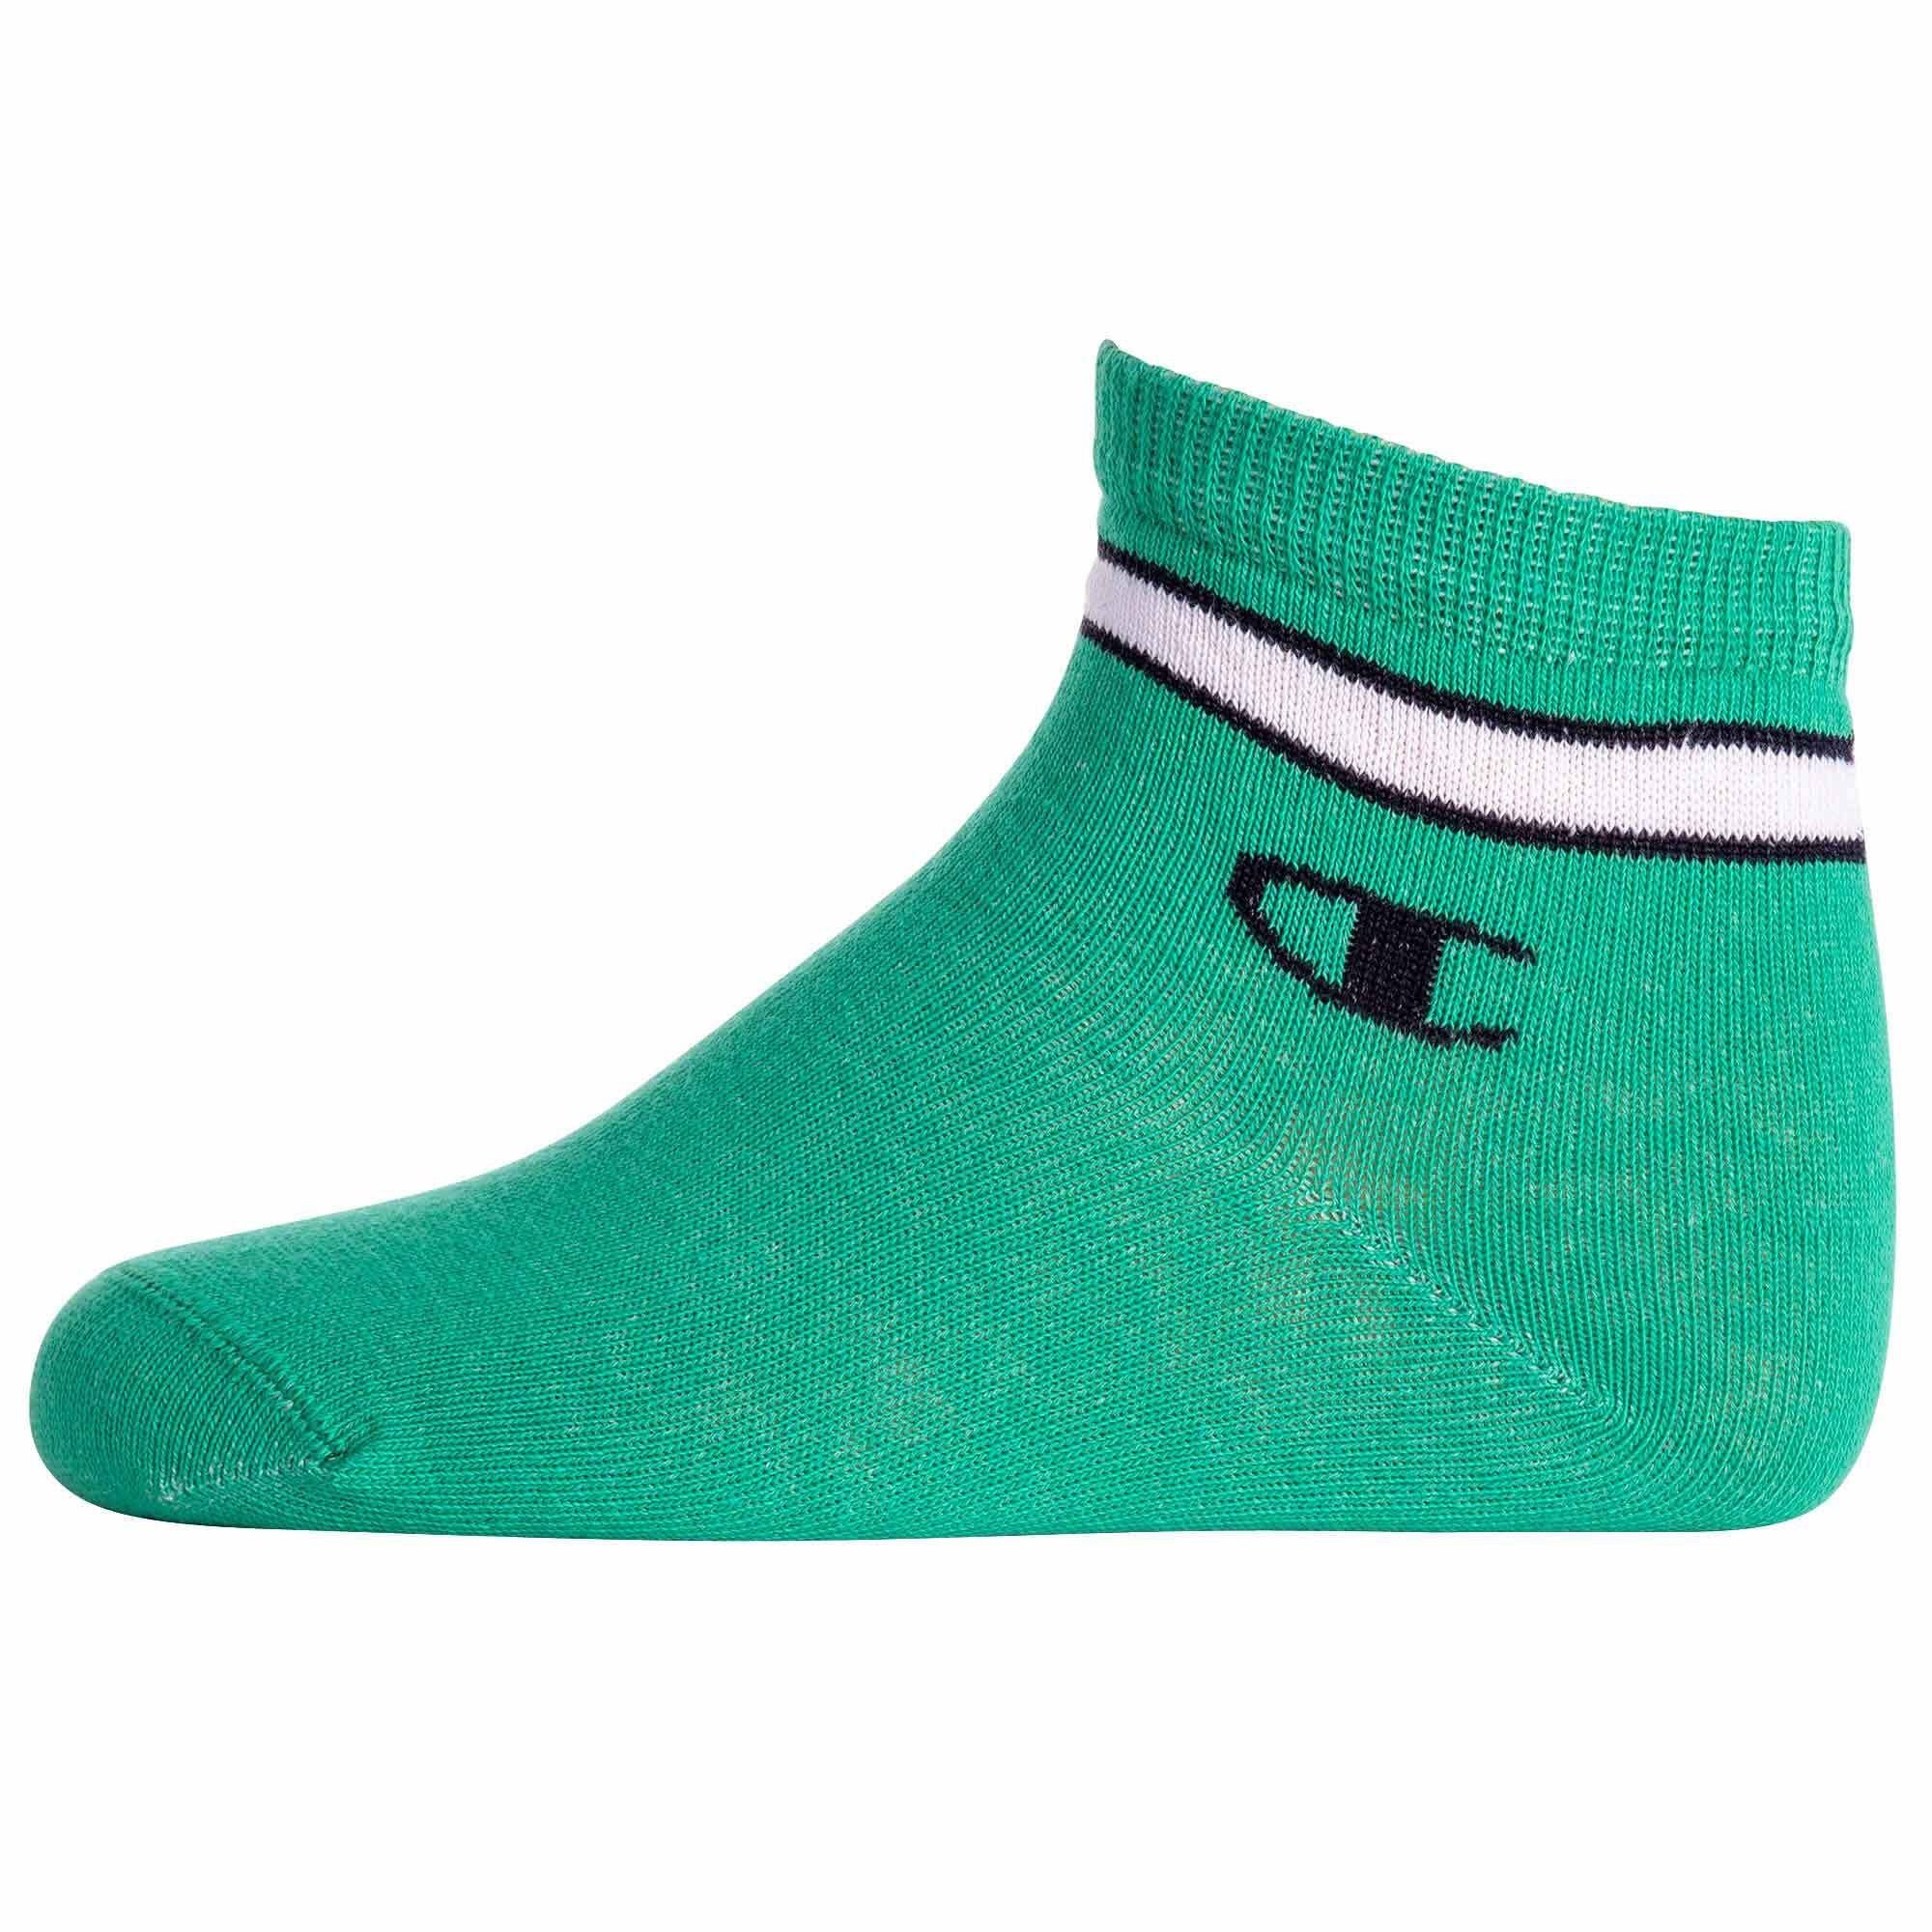 Kinder Unisex Champion 7 1 Quarter Mehrfarbig Socken Freizeitsocken - Paar Socken,